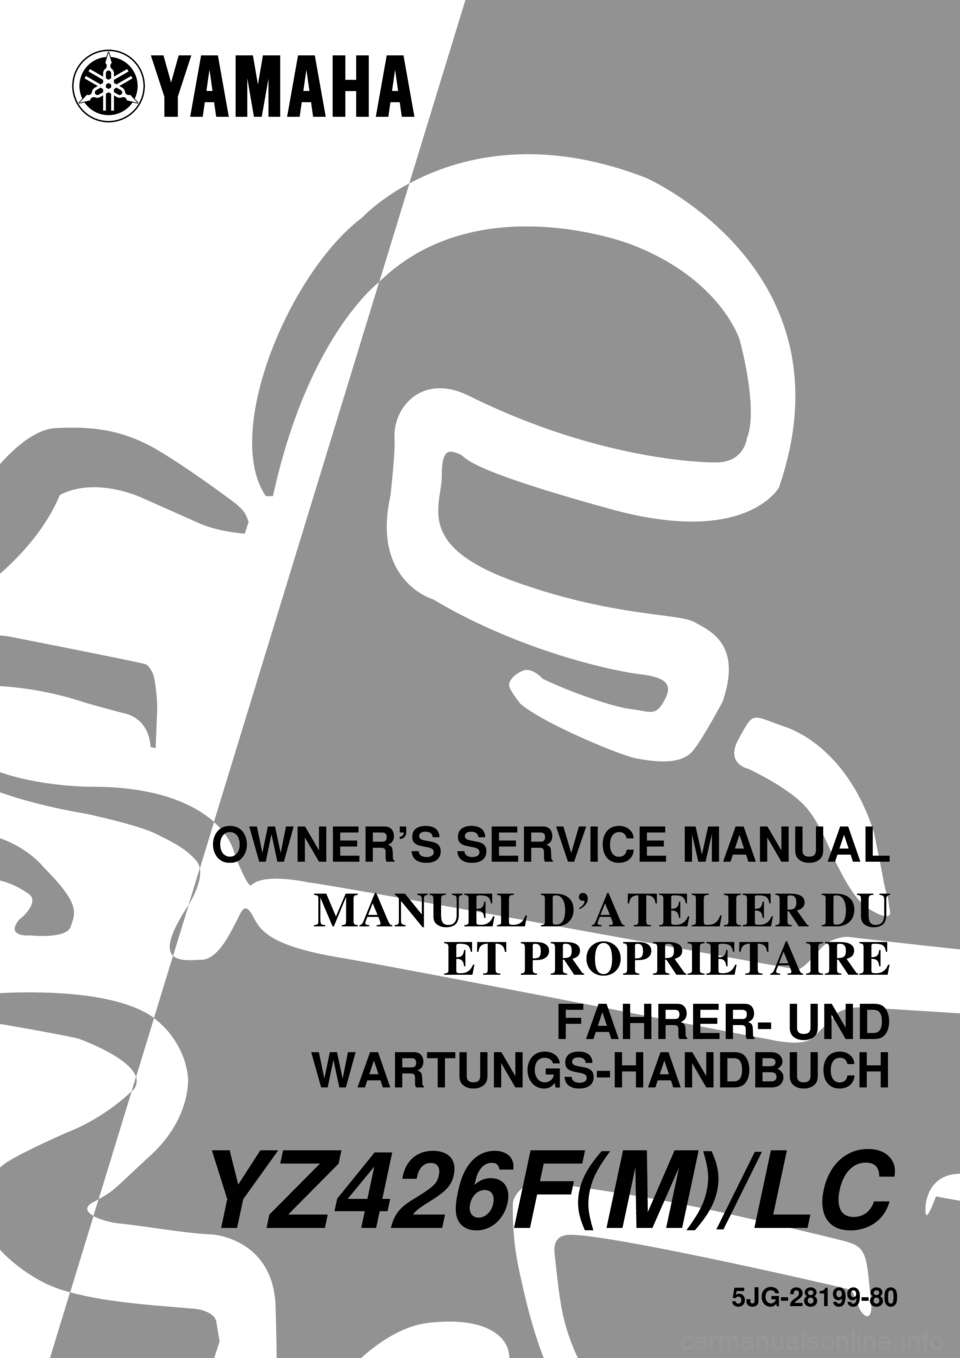 YAMAHA YZ426F 2000  Betriebsanleitungen (in German) 5JG-28199-80
YZ426F(M)/LC
OWNER’S SERVICE MANUAL
MANUEL D’ATELIER DU
ET PROPRIETAIRE
FAHRER- UND
WARTUNGS-HANDBUCH 